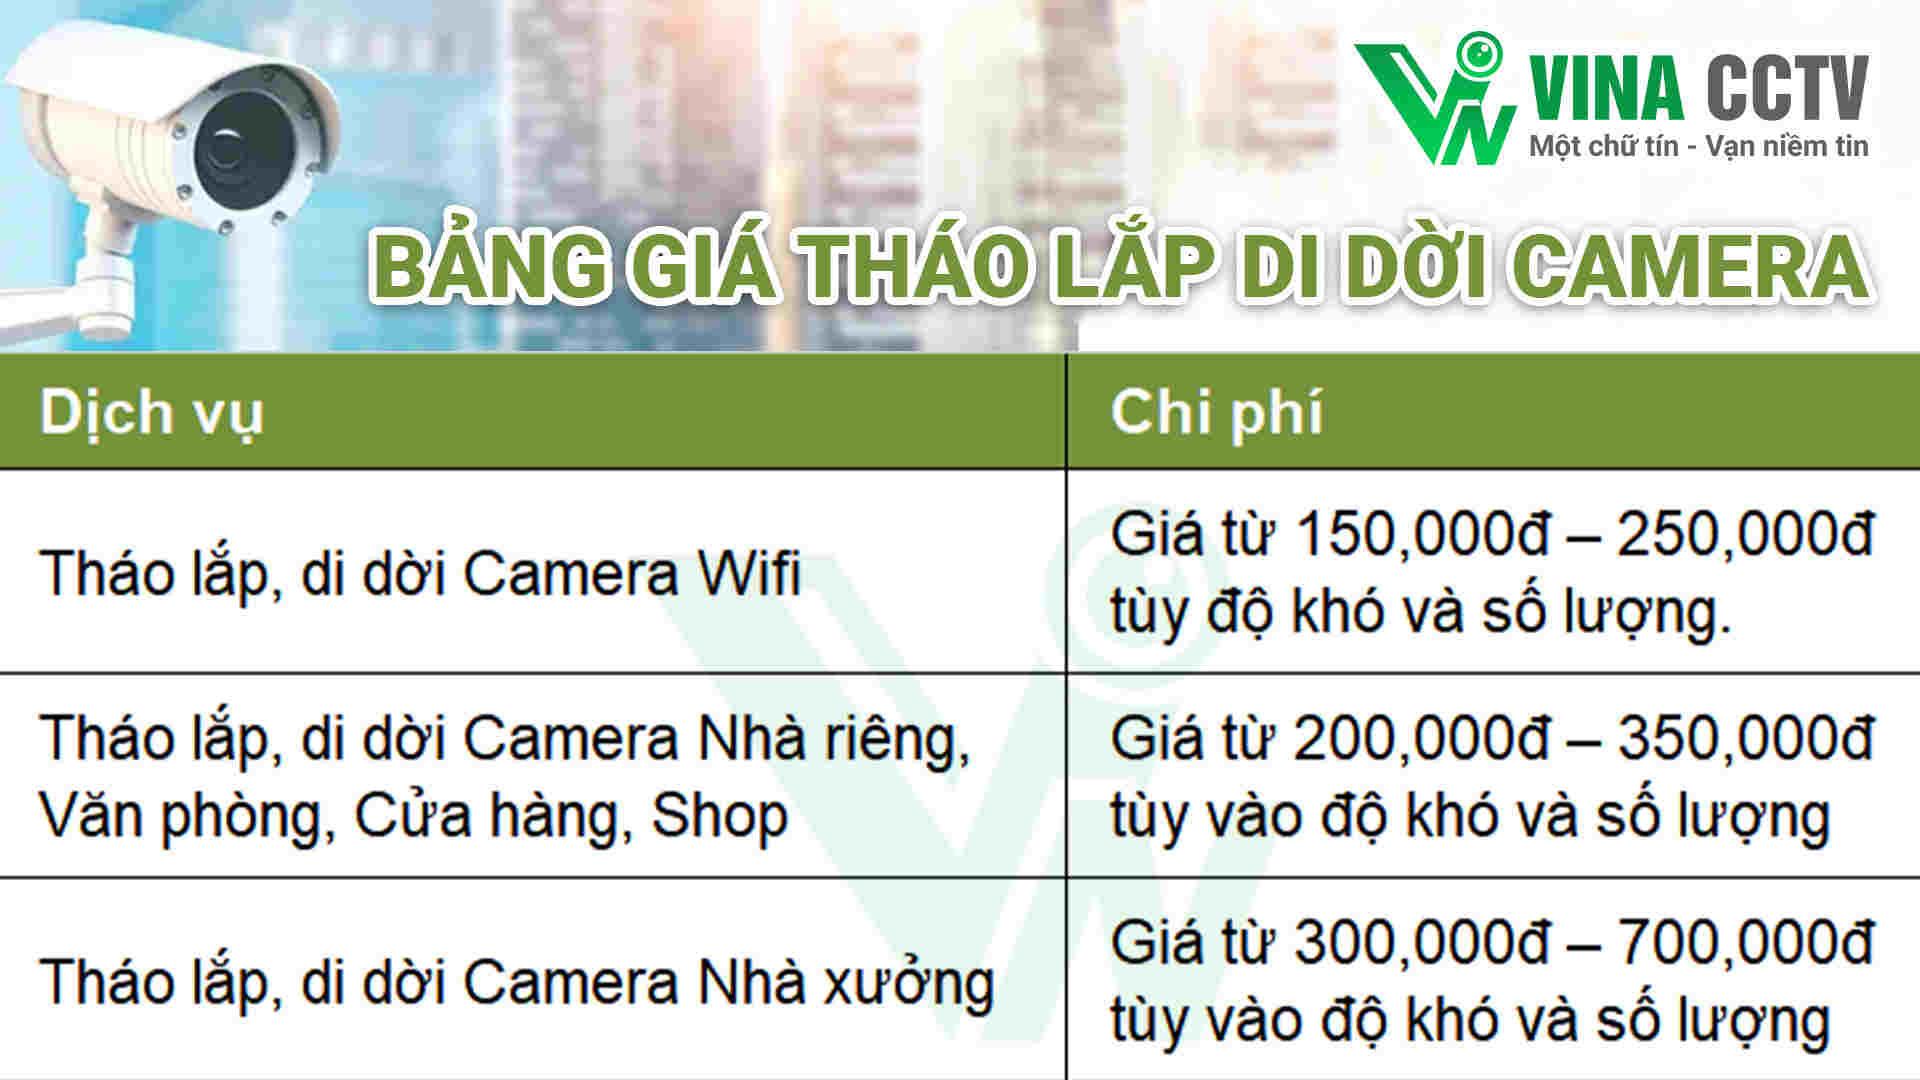 Camera Wifi, camera nhà riêng, camera nhà xưởng, chúng tôi hỗ trợ lắp đặt, di dời tại Huyện Bình Thạnh